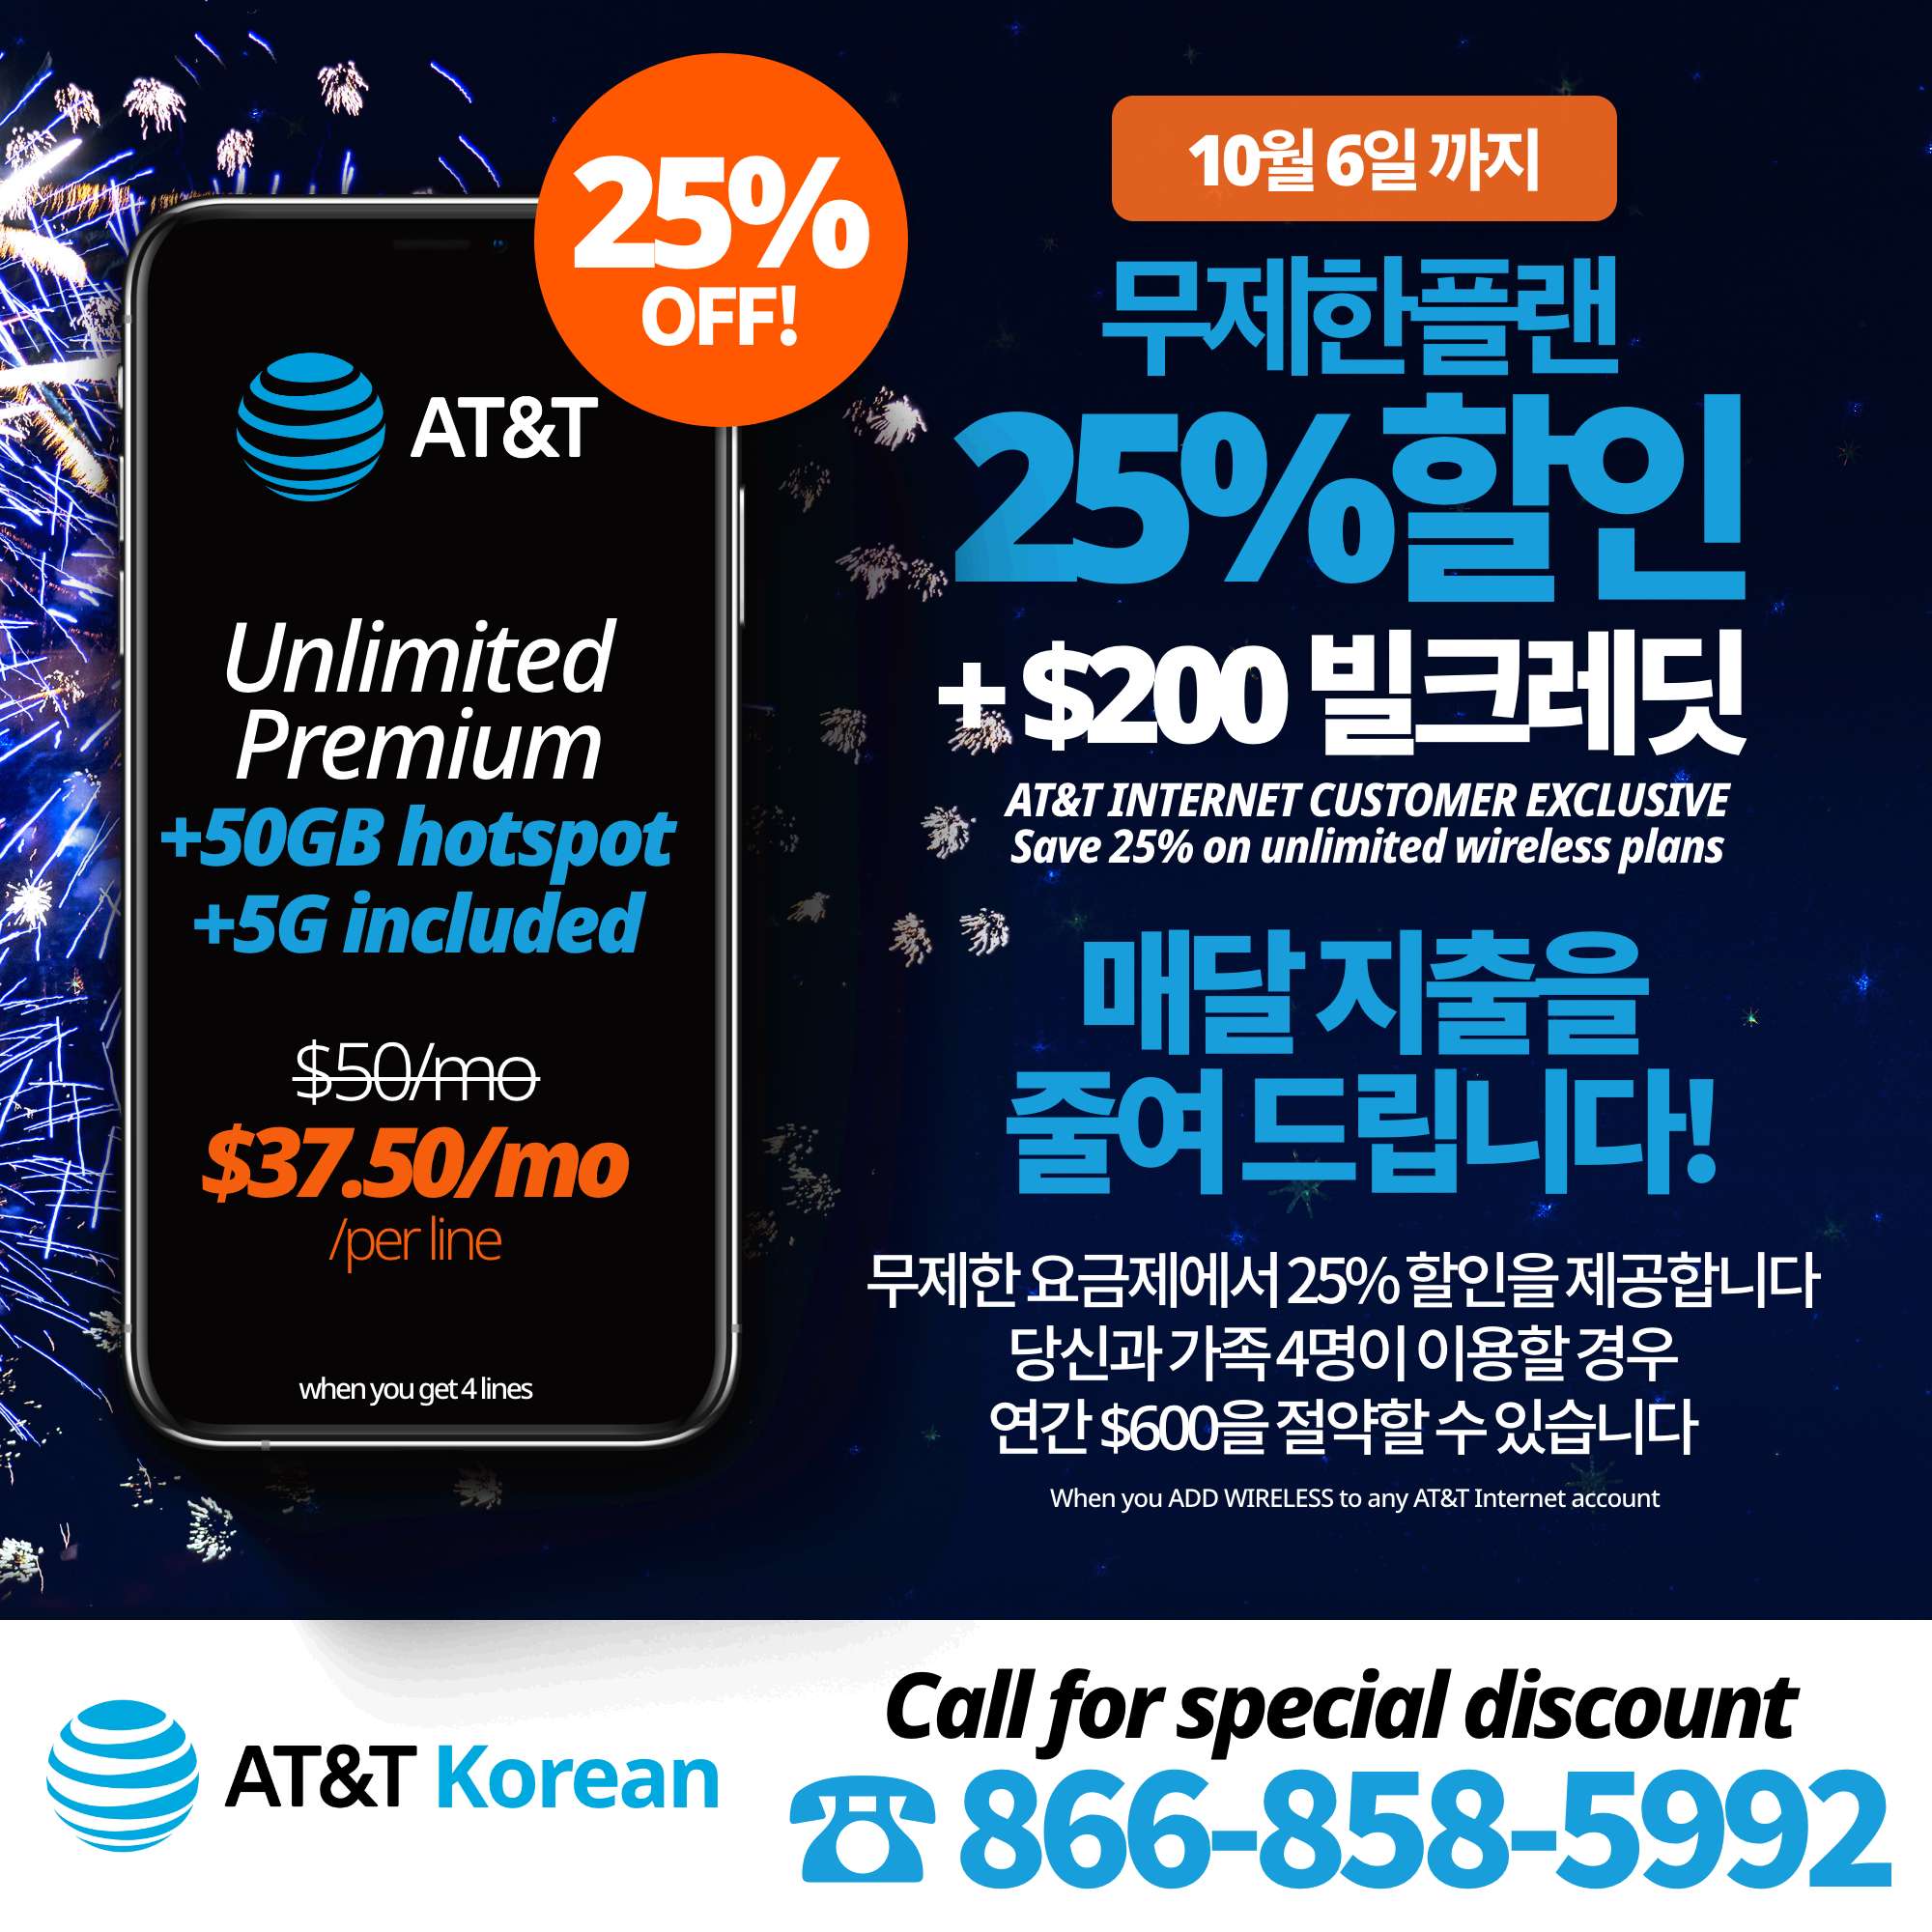 AT&T 한국어 - 미국내 유일한 한인공인딜러 - 아이폰 및 갤럭시 핫딜, 무제한플랜, 홈인터넷 등 전문 무료 상담